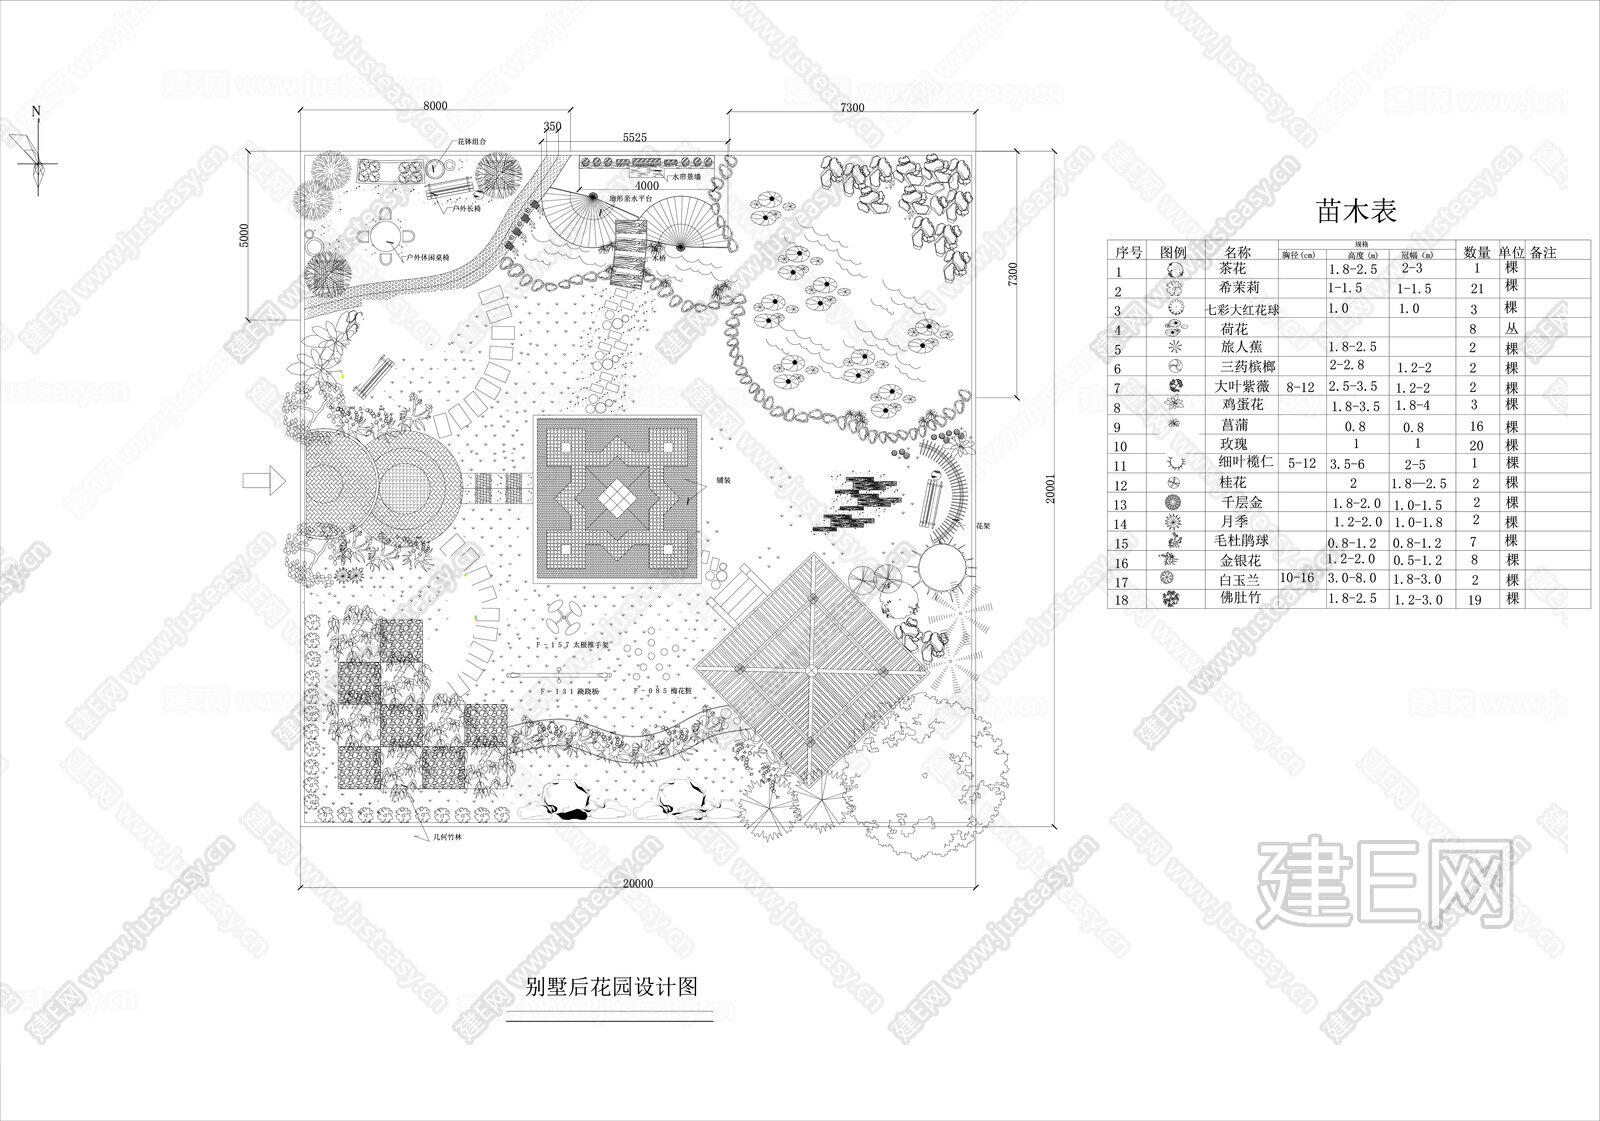 50套别墅花园庭院设计方案|CAD施工图cad施工图